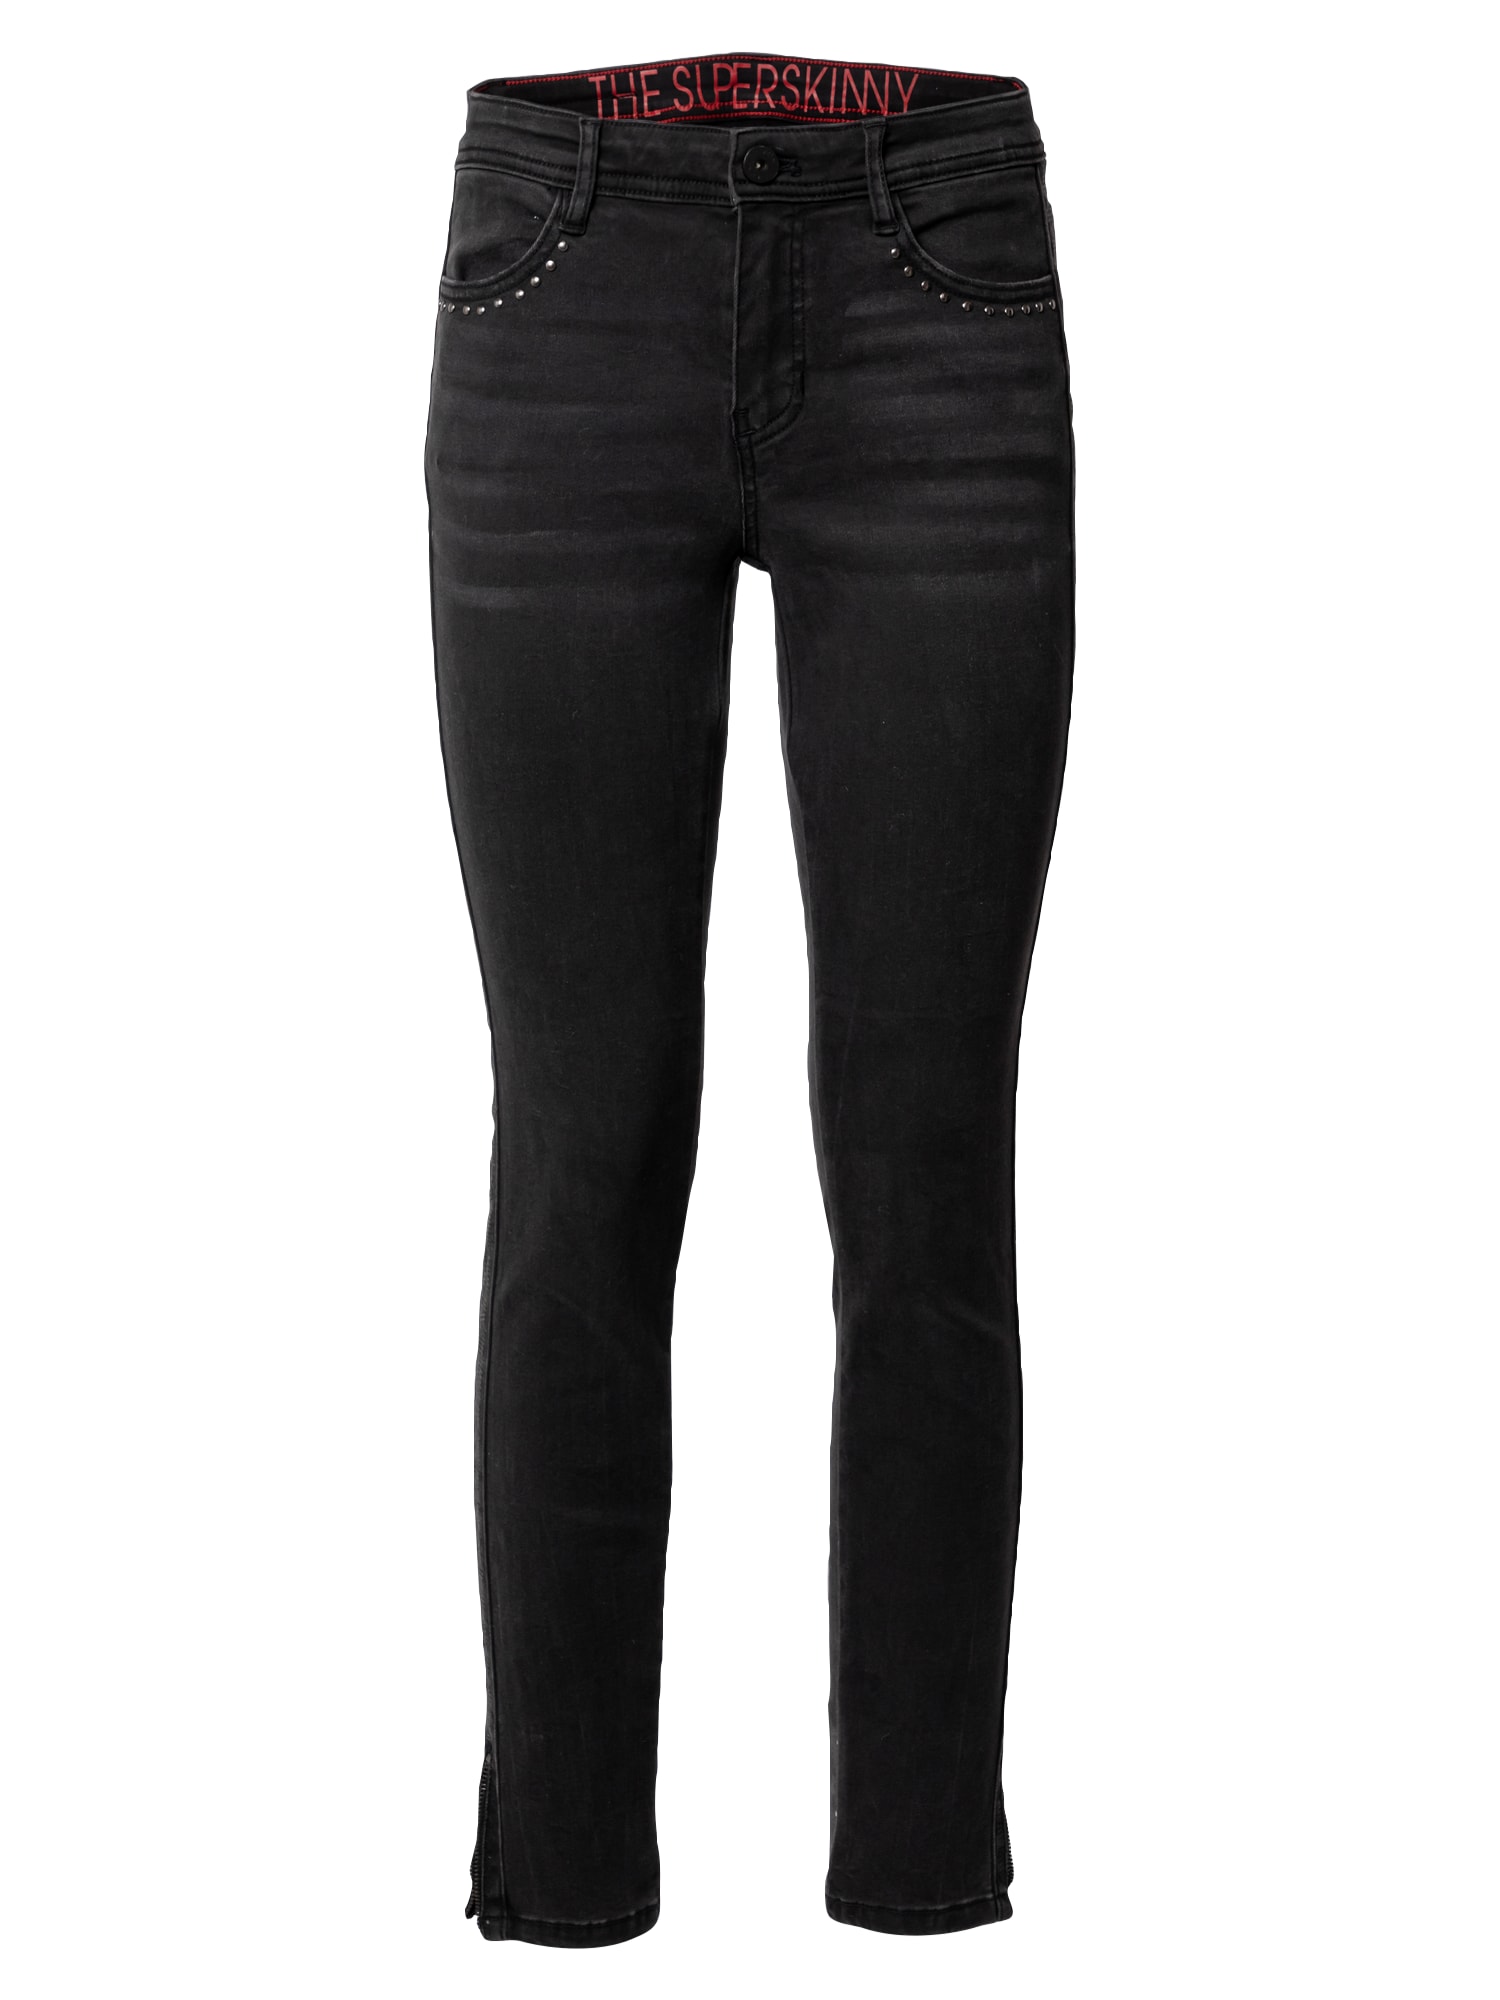 TAIFUN Džinsai juodo džinso spalva